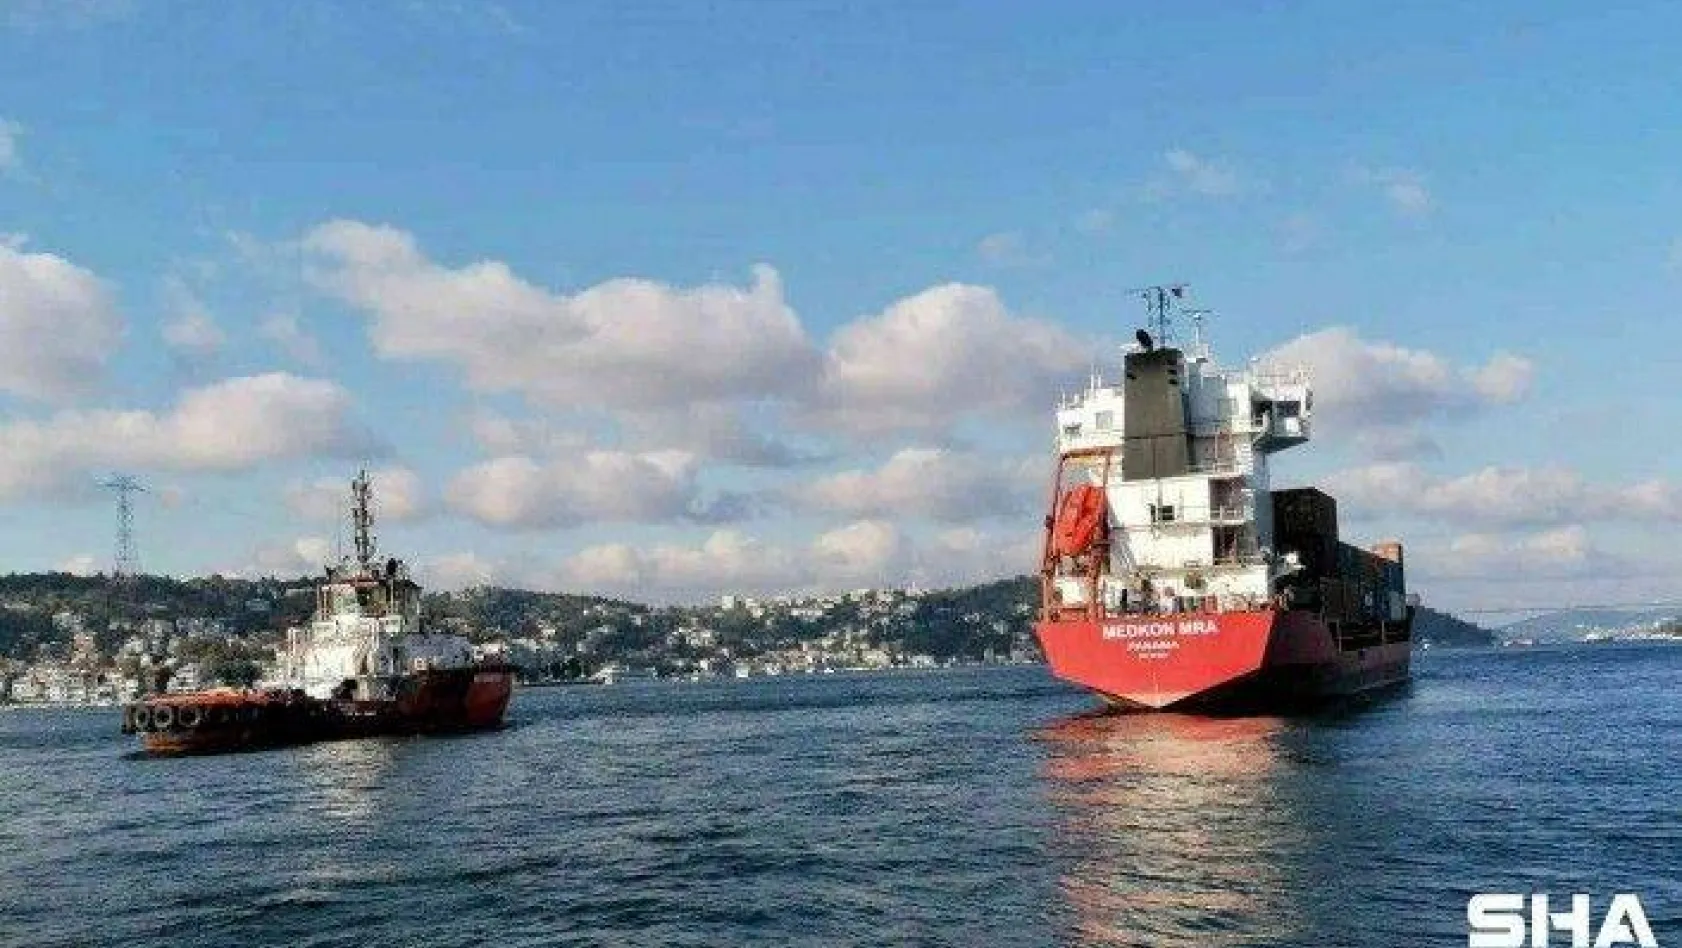 İstanbul Boğazında Üsküdar açıklarında ilerleyen 102 metre boyunda bir kargo gemisi makine arızası nedeniyle denizde sürüklendi. Sürüklenen gemi kıyıya metreler kala durabildi.